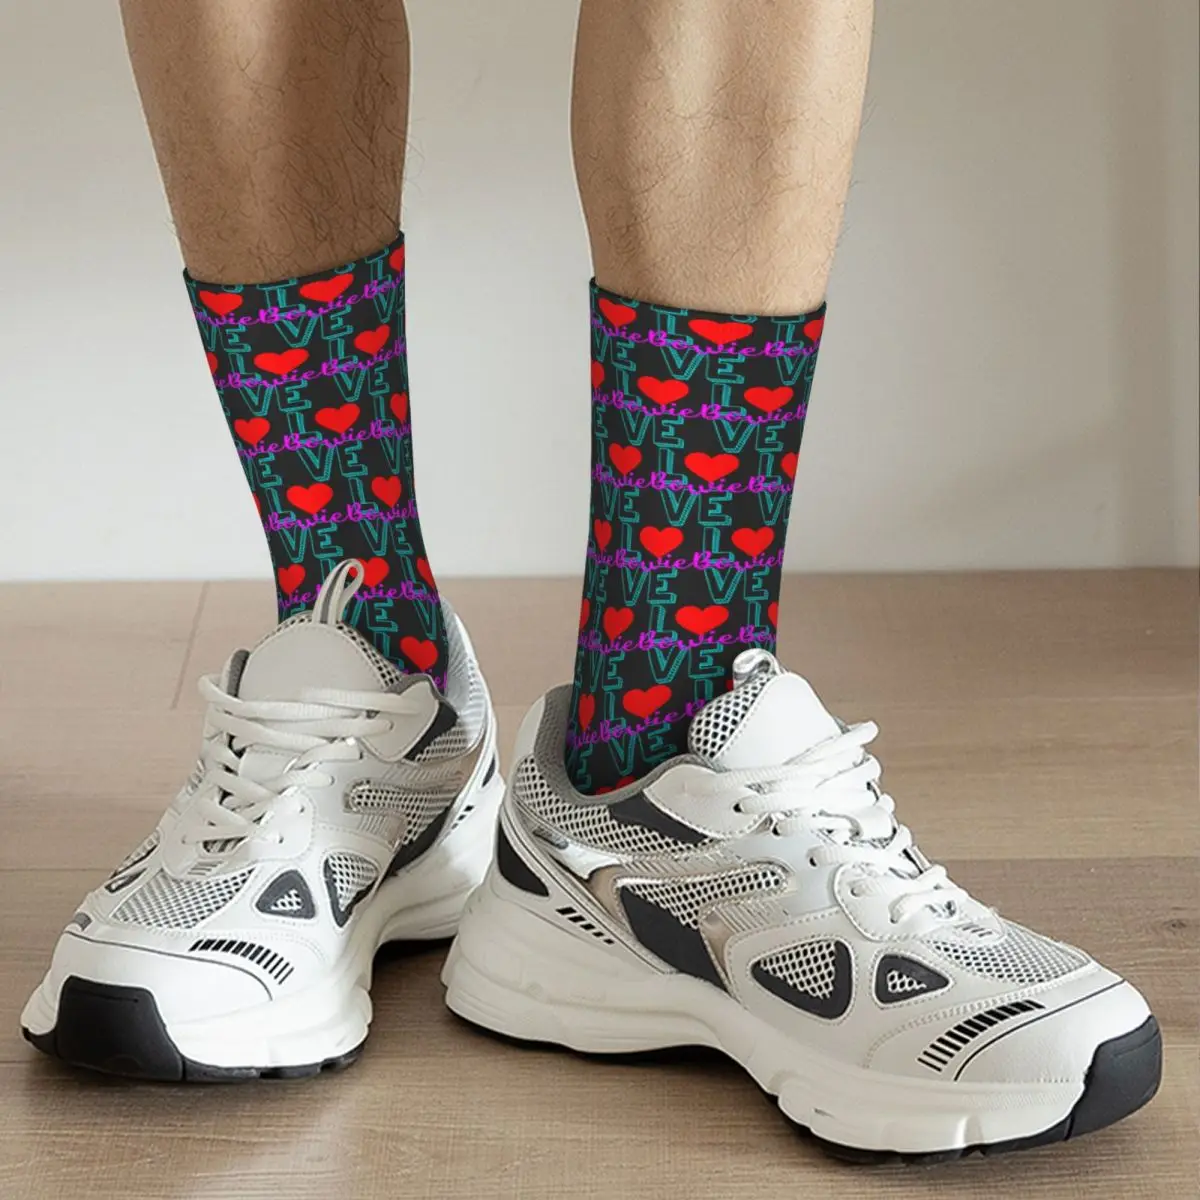 Ластични чорапи Bowie Bowieic (2) R198 с графичен дизайн, най-ДОБРЕ КУПИ ластични чорапи на Онази в контрастен цвят4